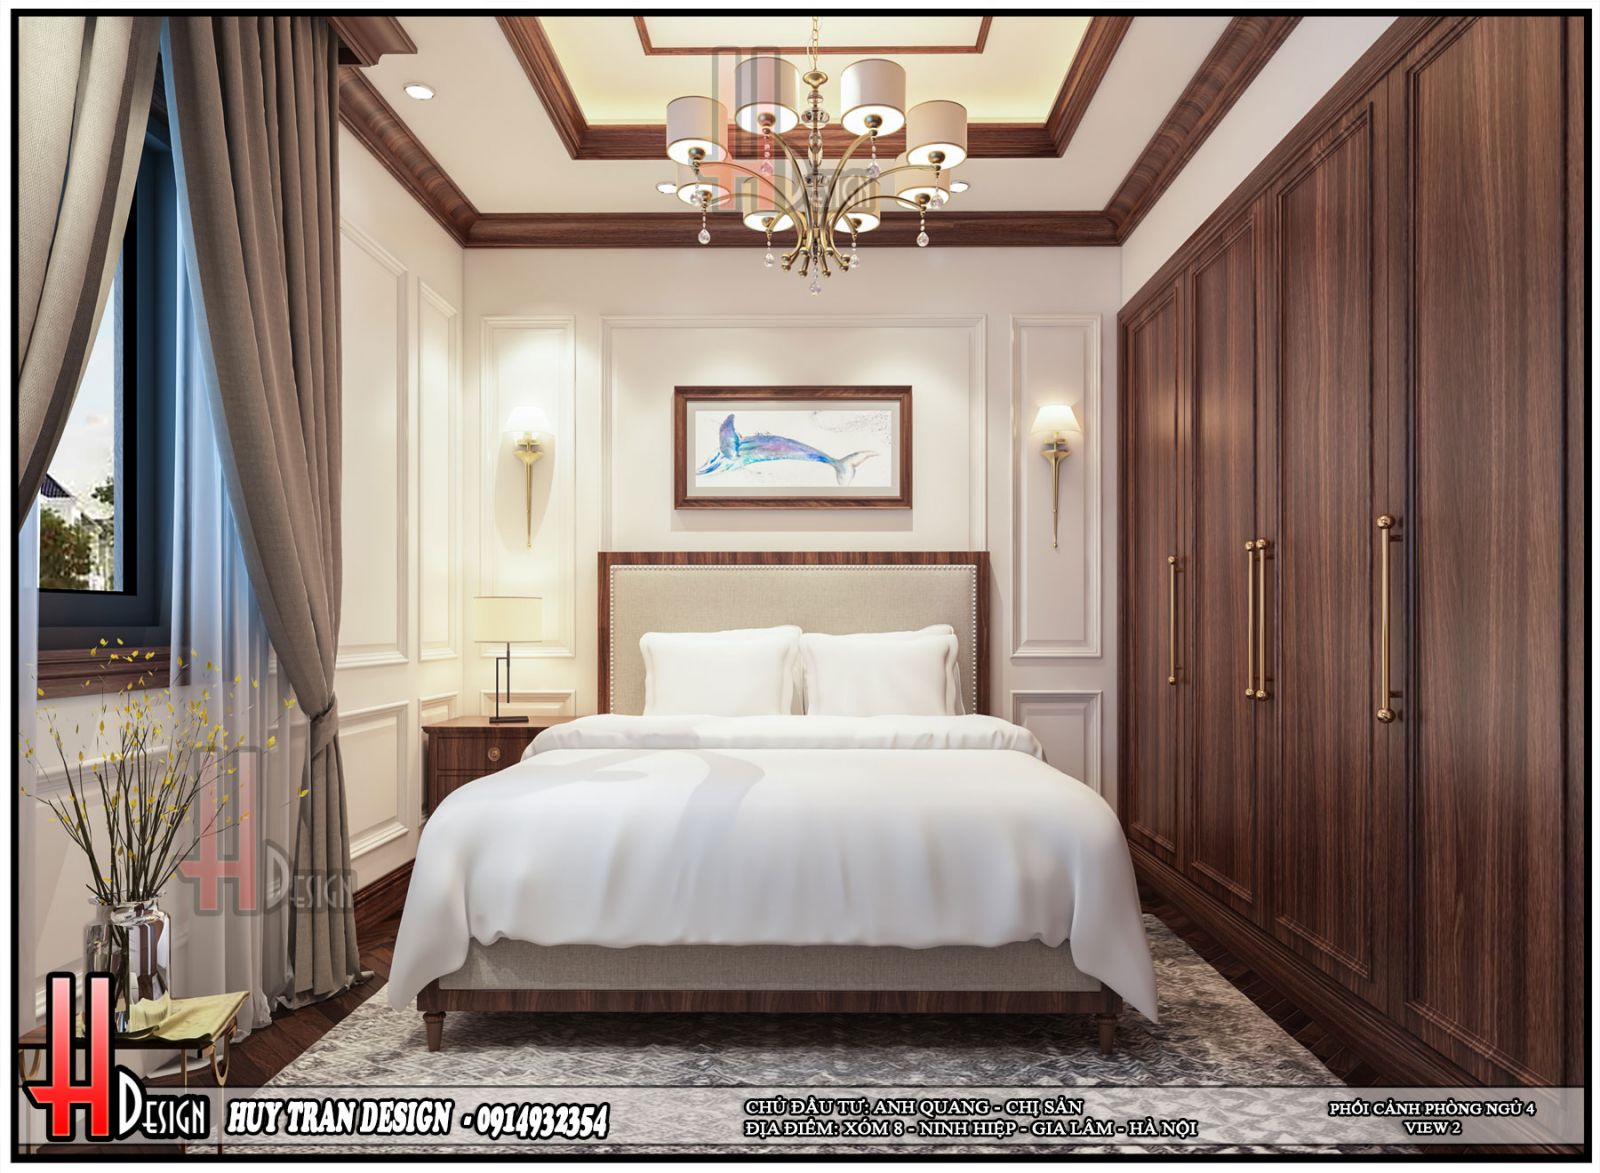 Mẫu thiết kế nội thất phòng ngủ tân cổ điển tone trắng đẹp tinh tế